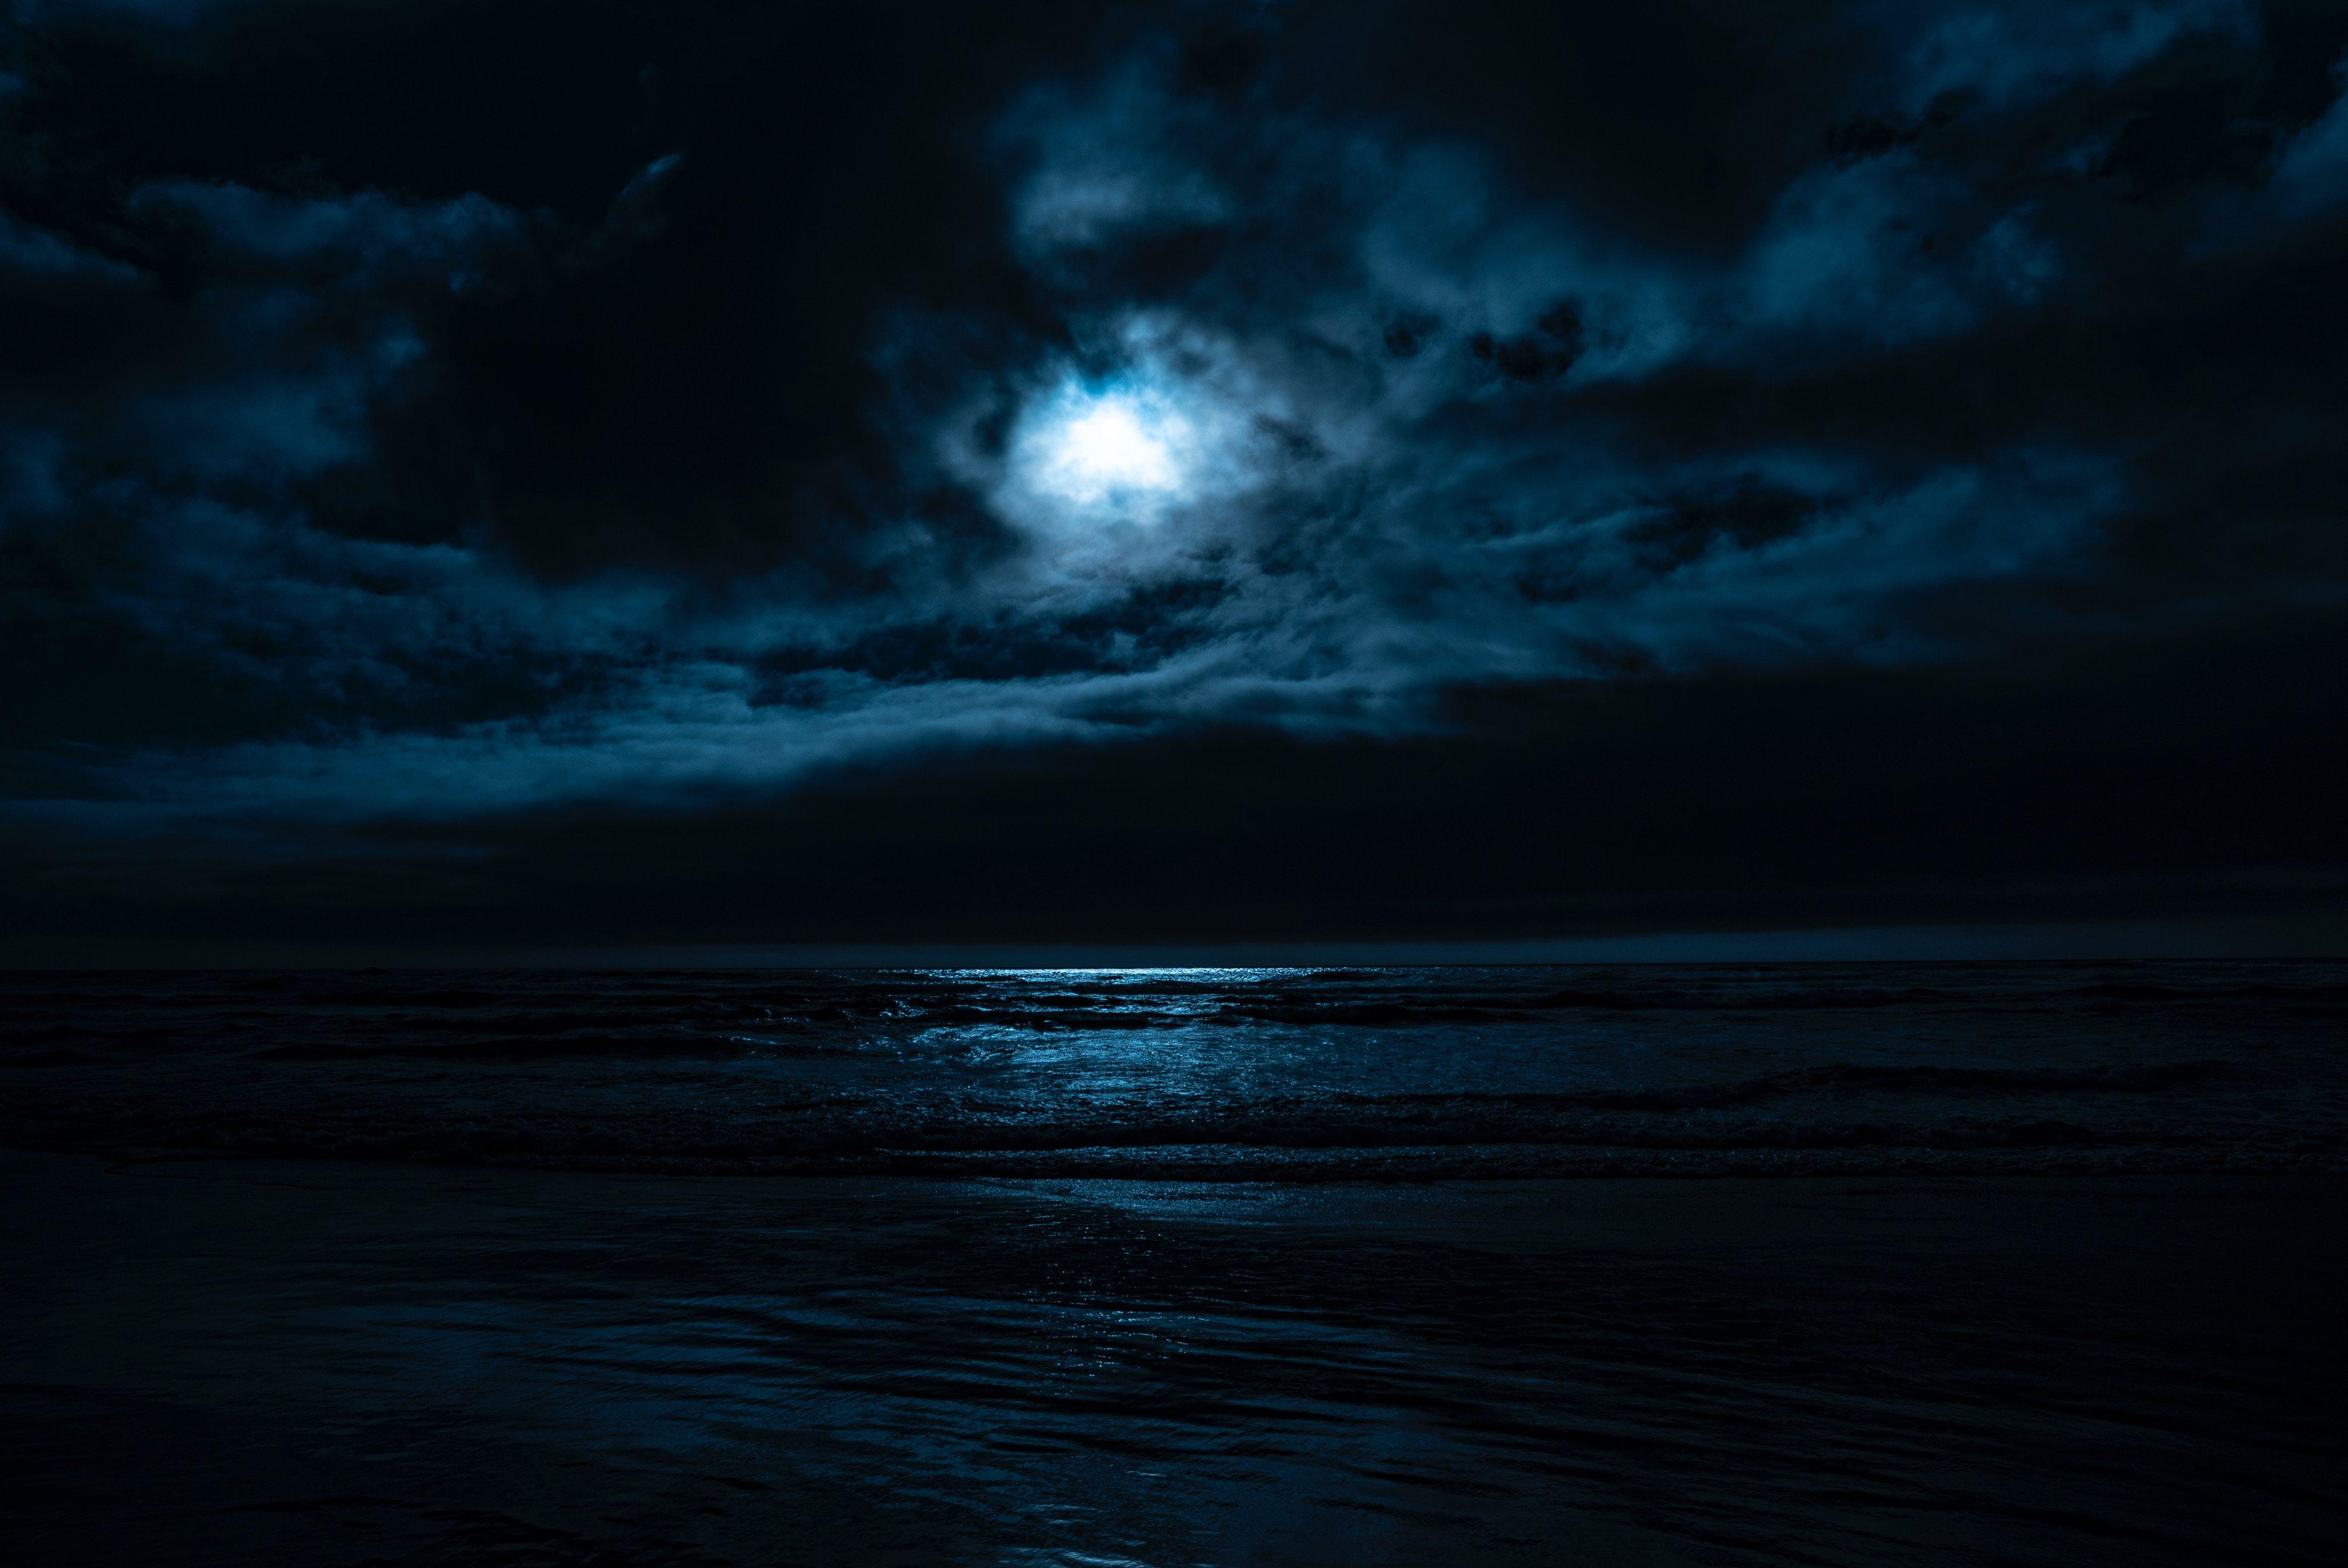 Dark Night Beach Wallpapers - Top Free Dark Night Beach Backgrounds